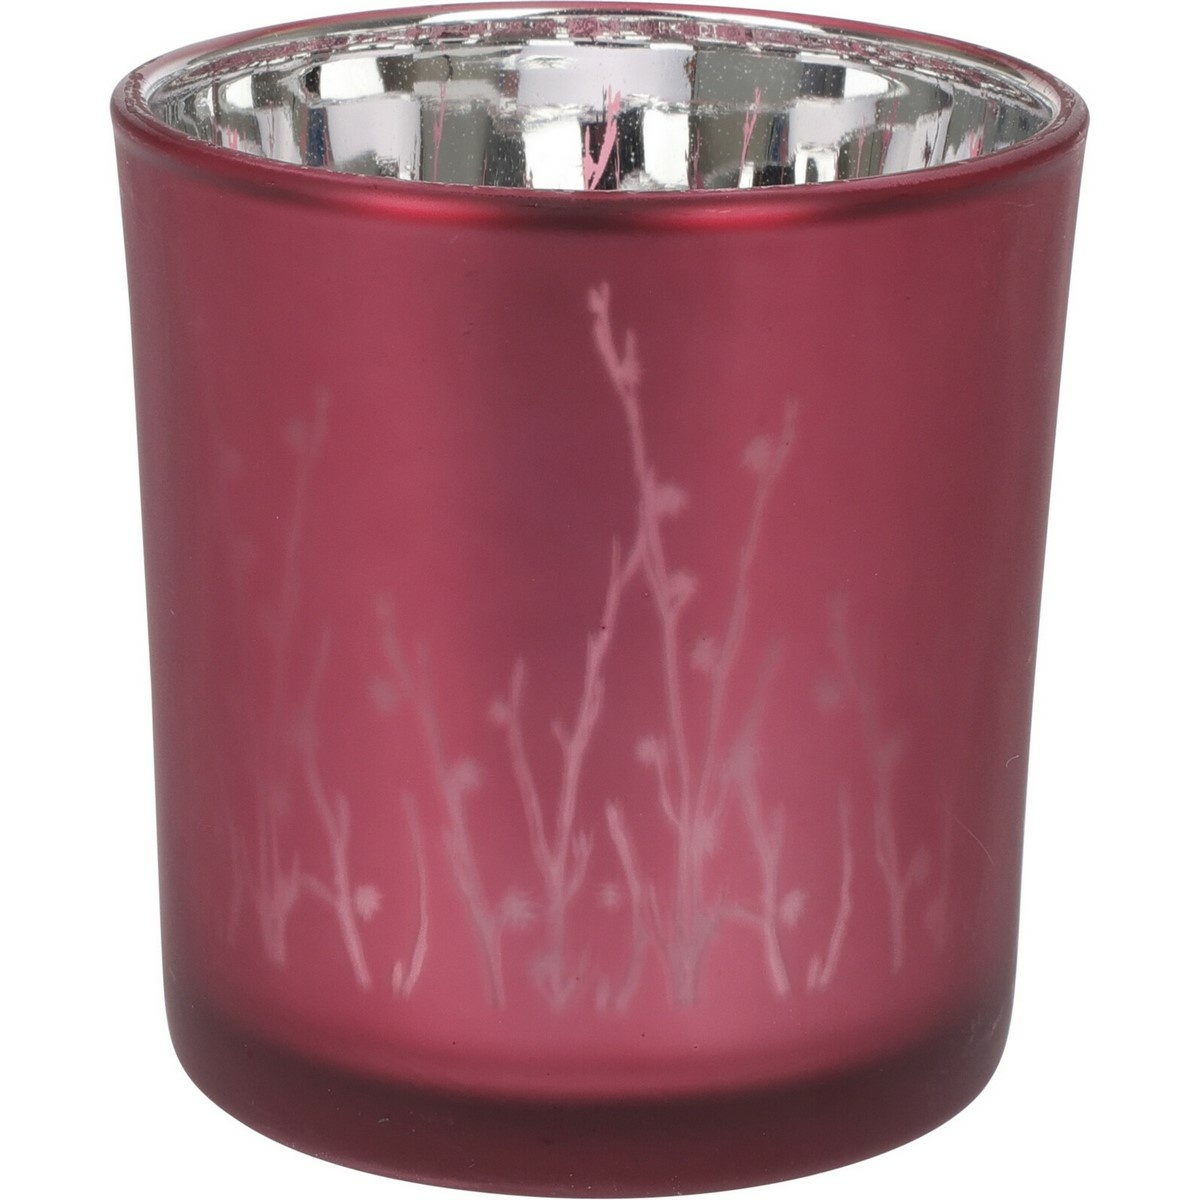 Meissa üveg gyertyatartó, rózsaszín, 7 x 8 cm